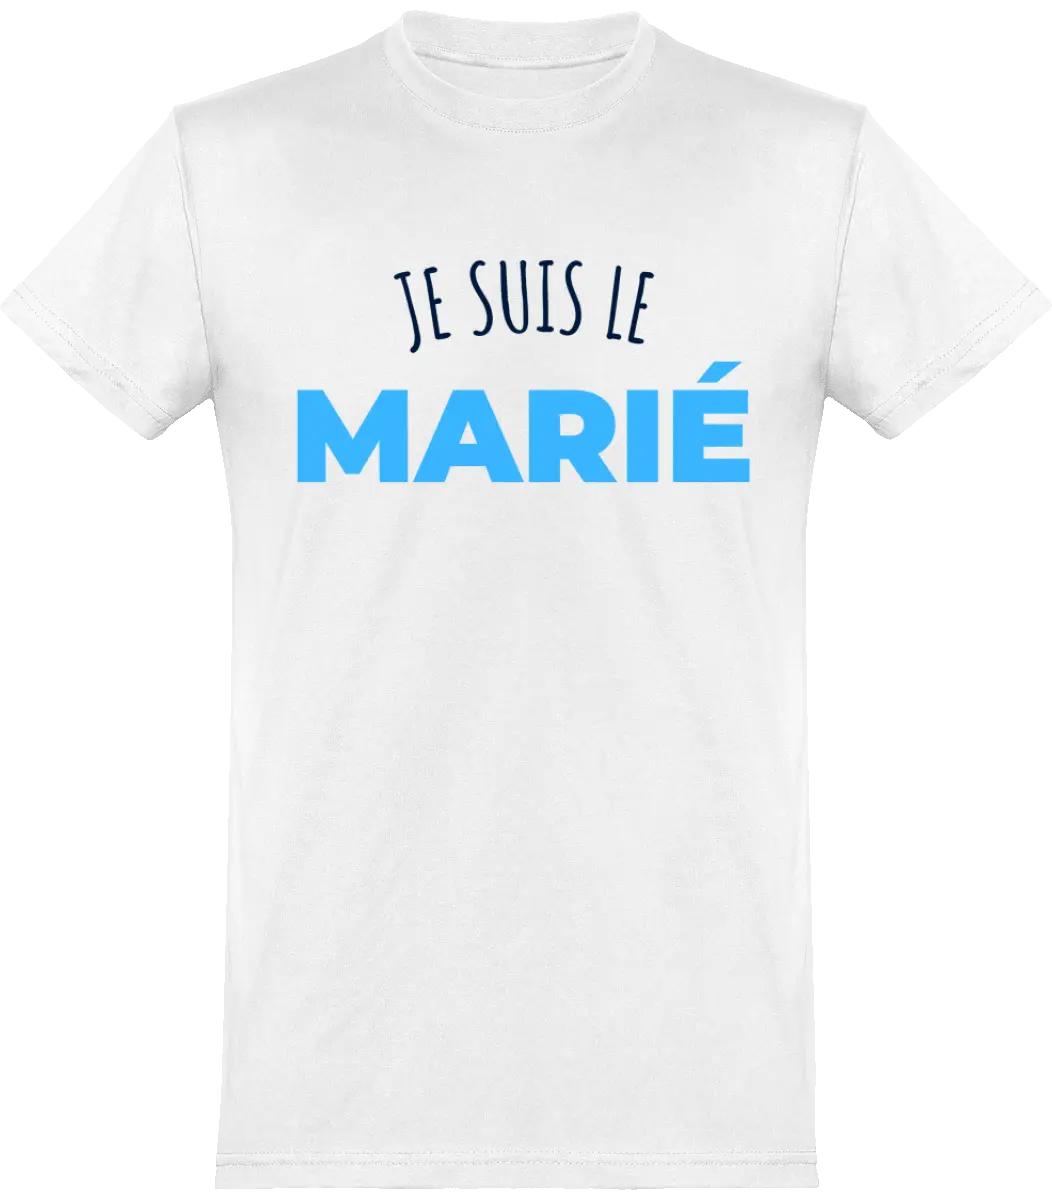 T-shirt EVG "Je suis le marié" | Mixte - French Humour